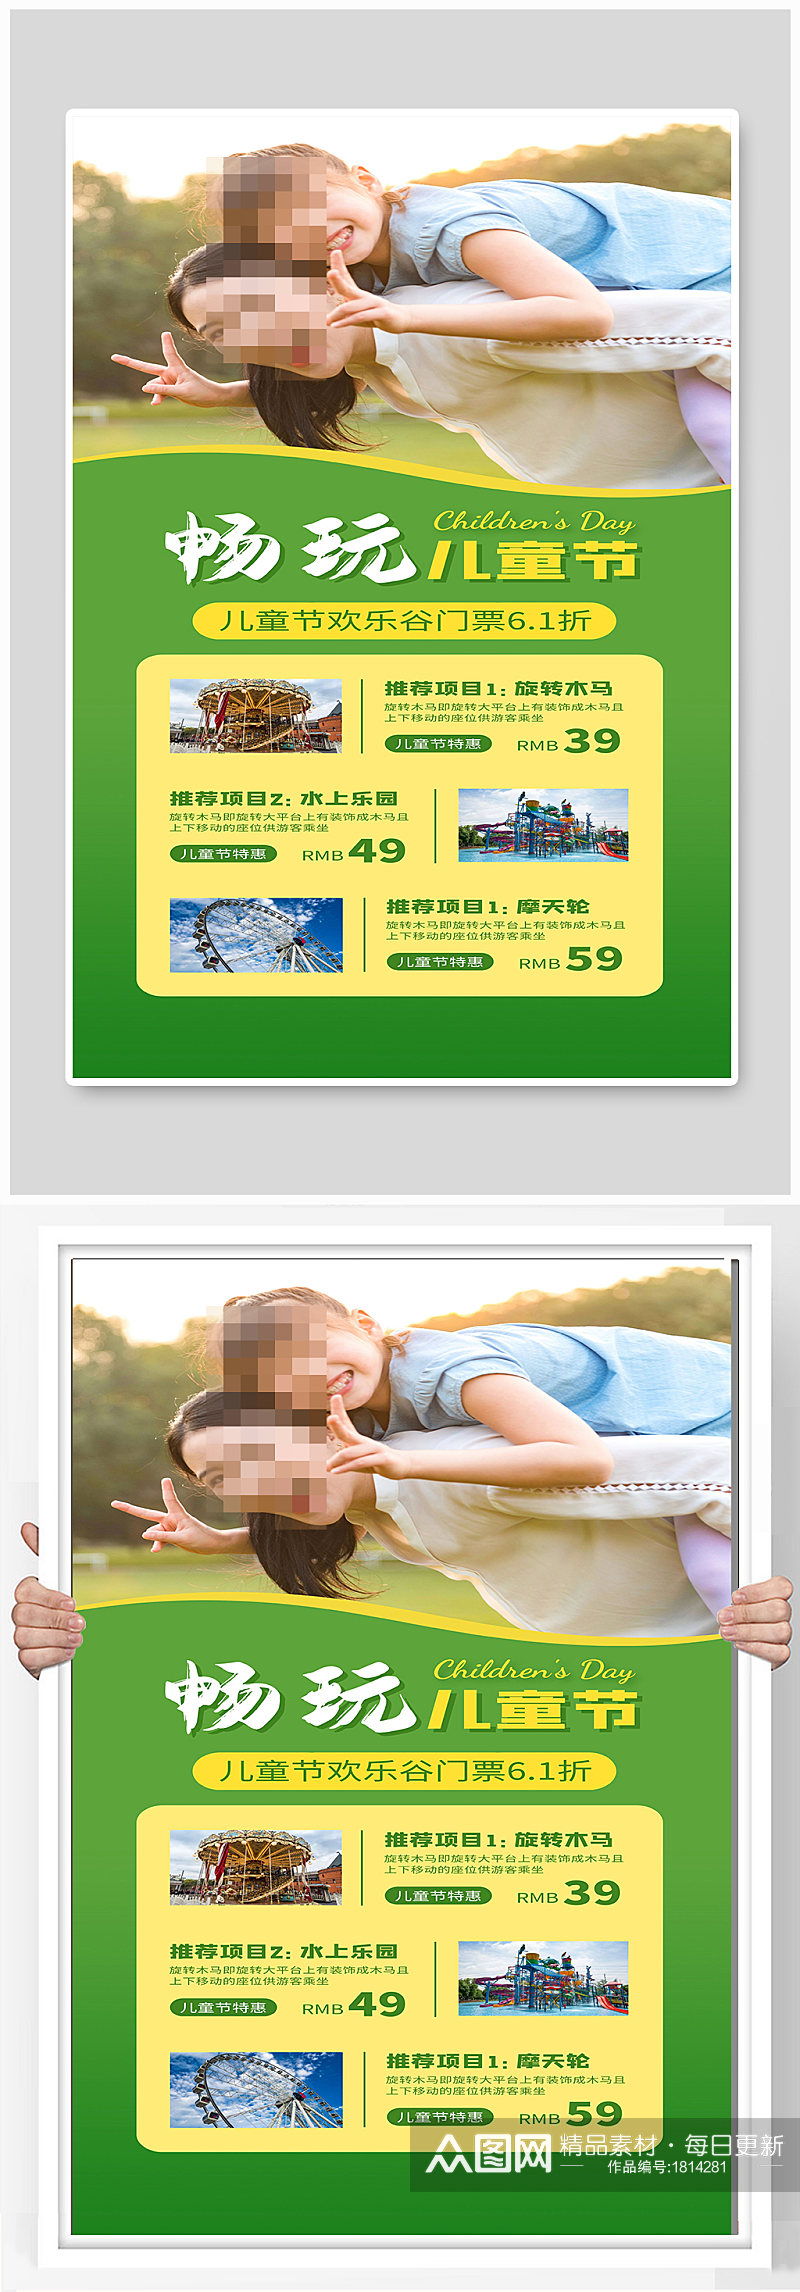 欢乐谷儿童节畅玩游乐场宣传海报设计素材